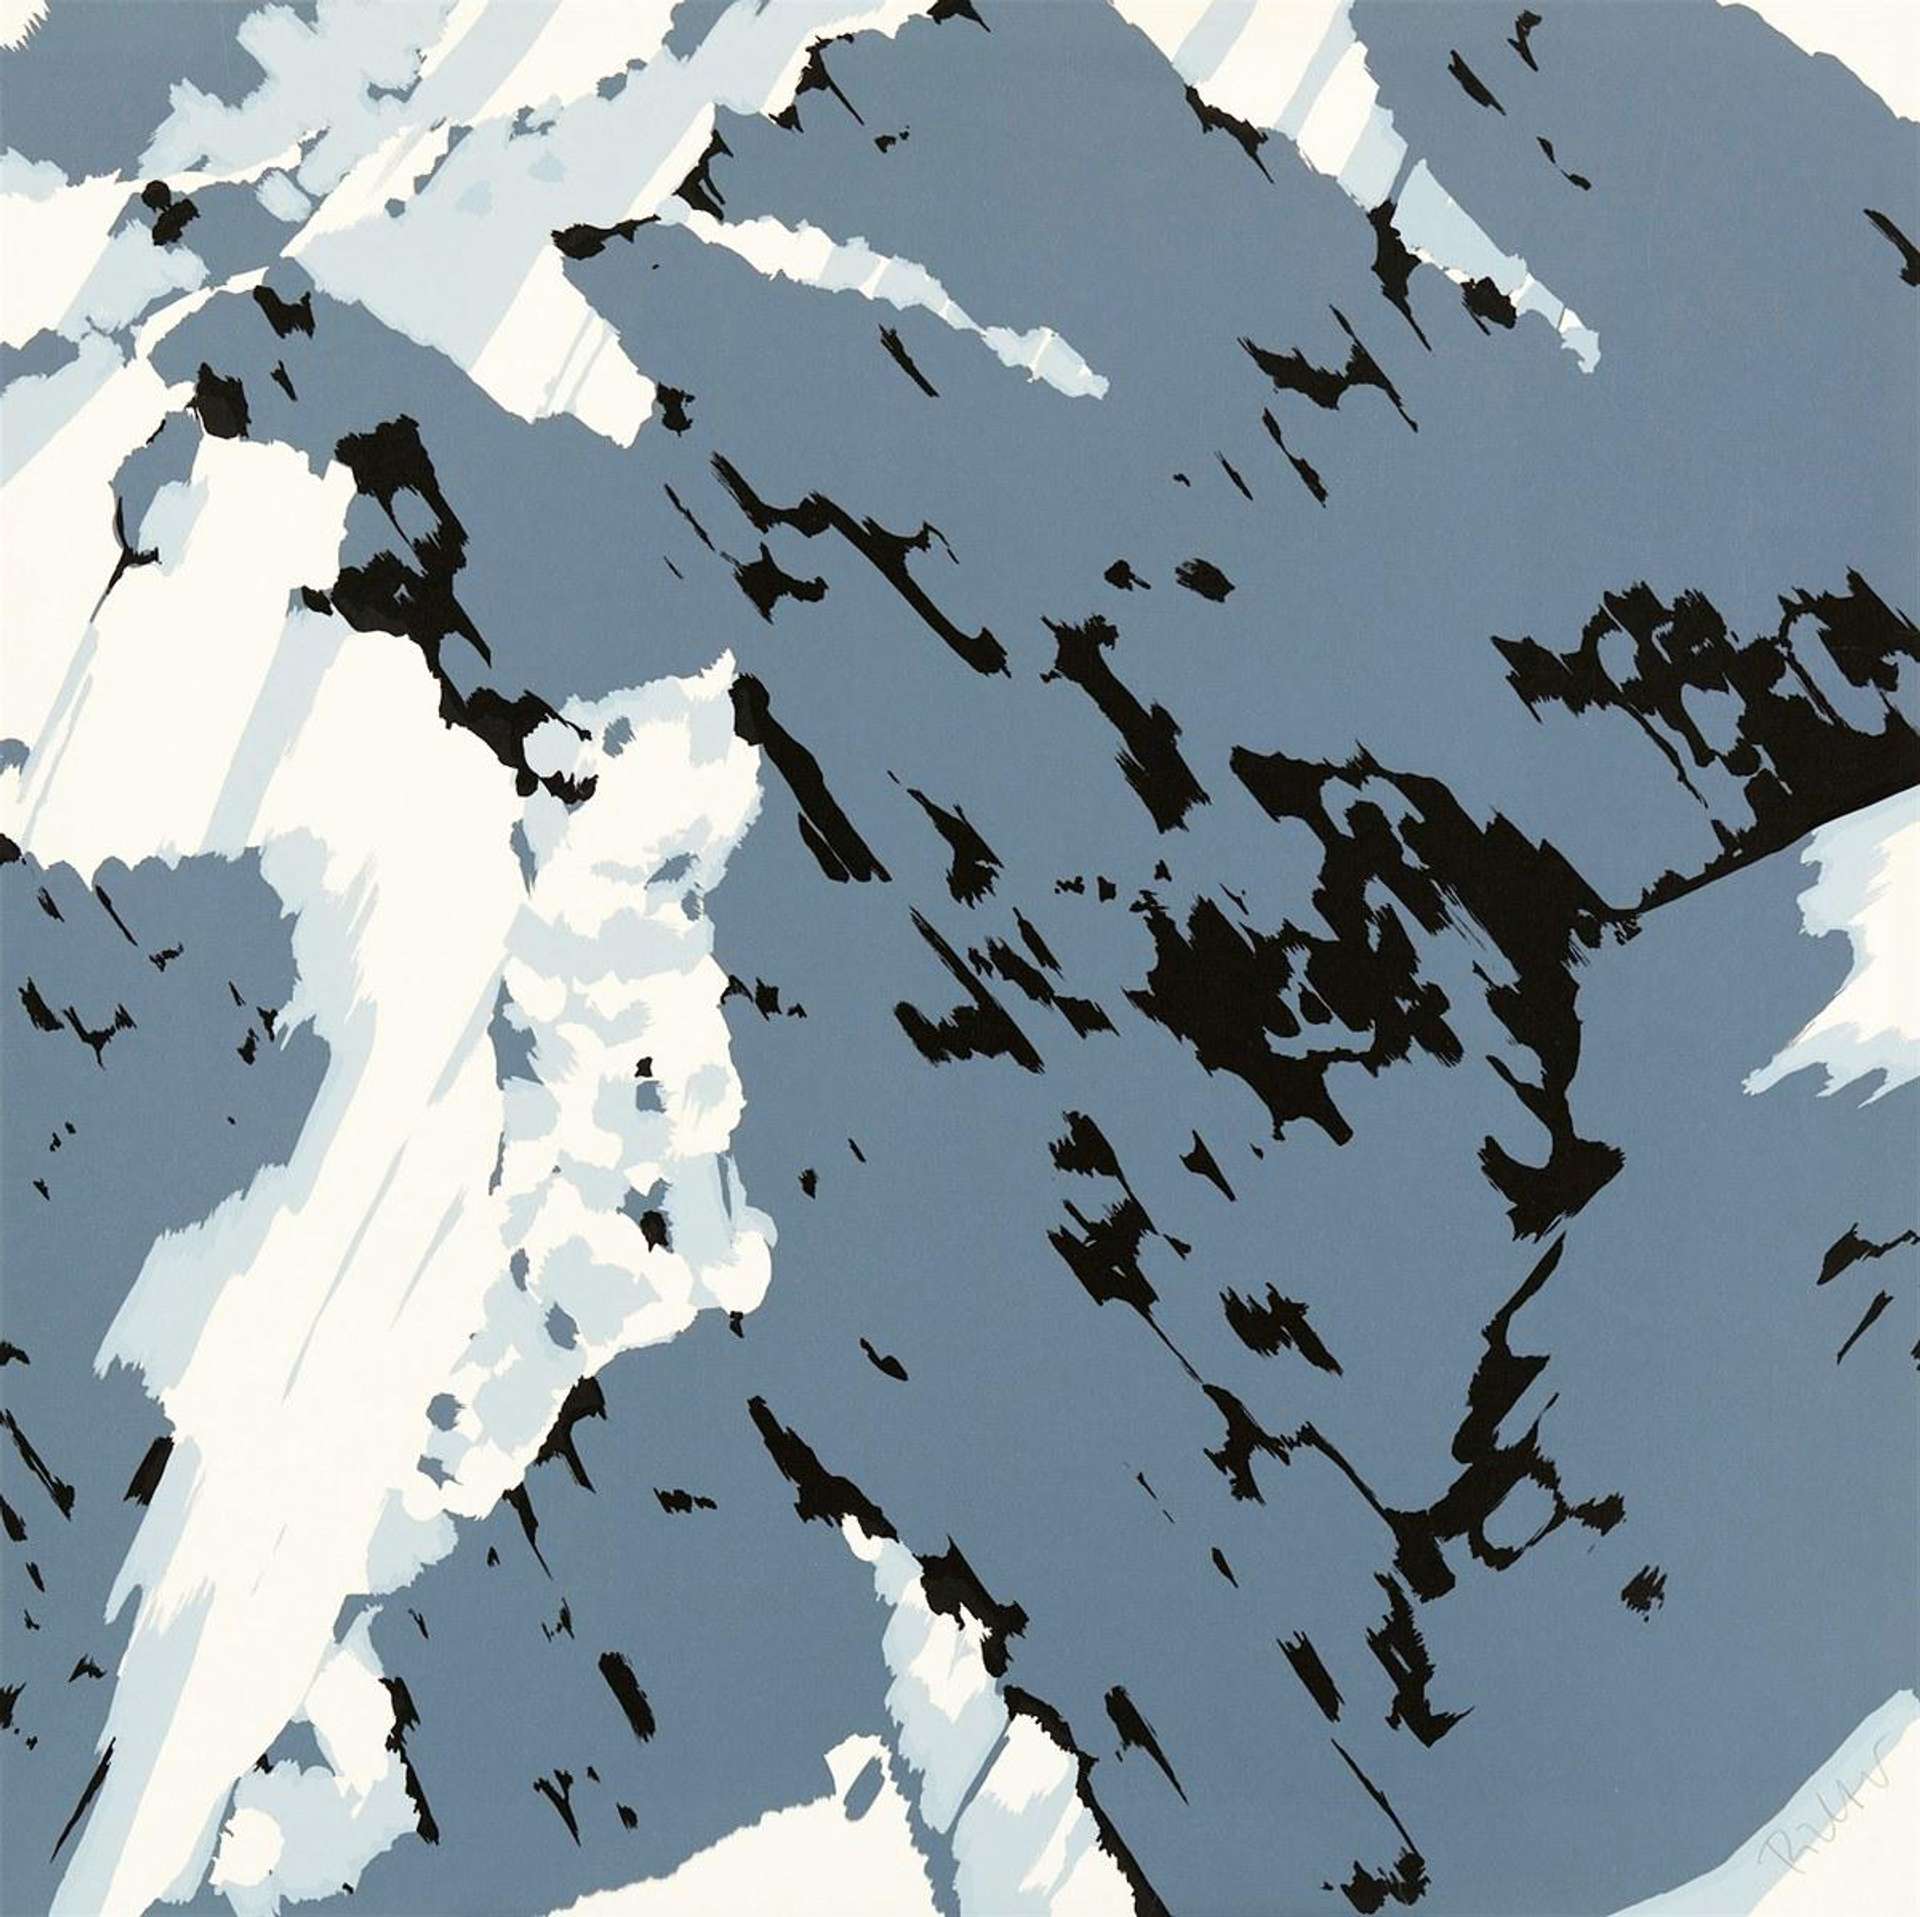 Schweizer Alpen I - A1 - Signed Print by Gerhard Richter 1969 - MyArtBroker